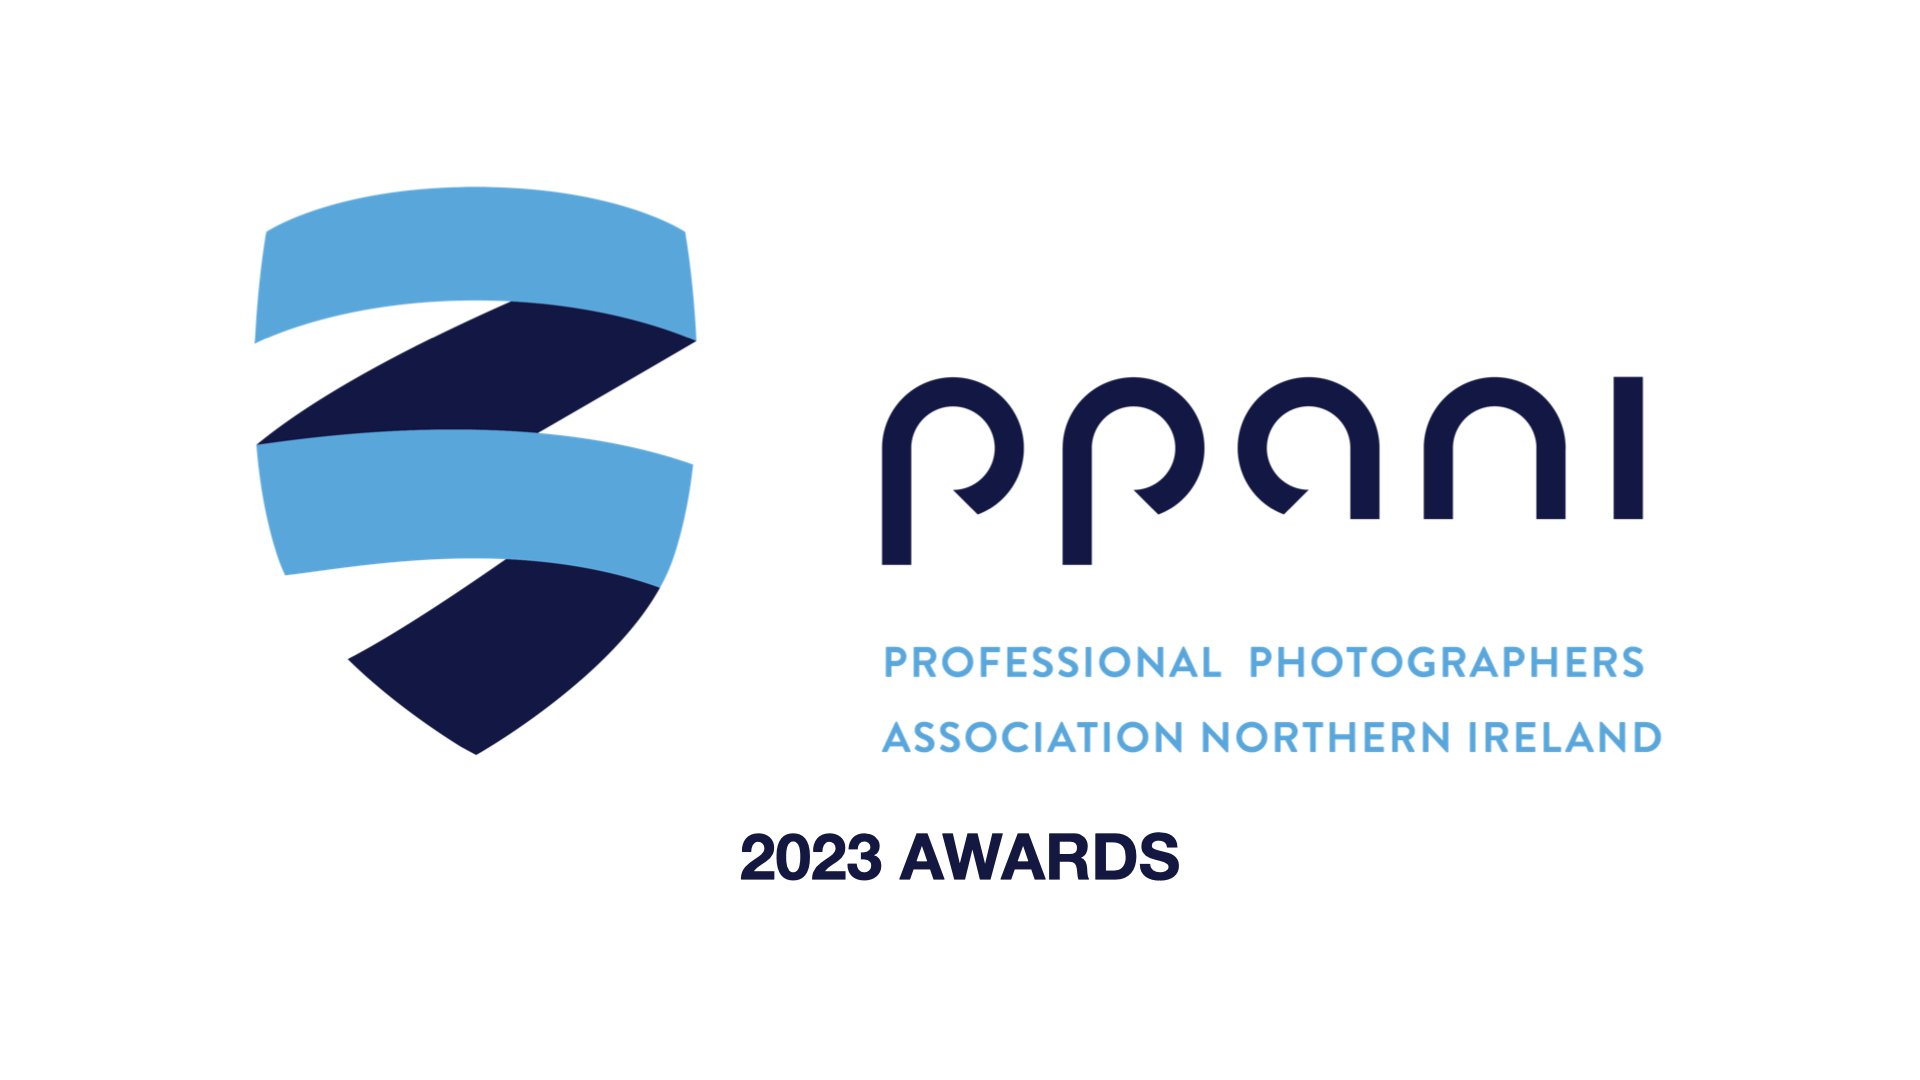 PPANI 2023 Finalists_presentation.001.jpeg